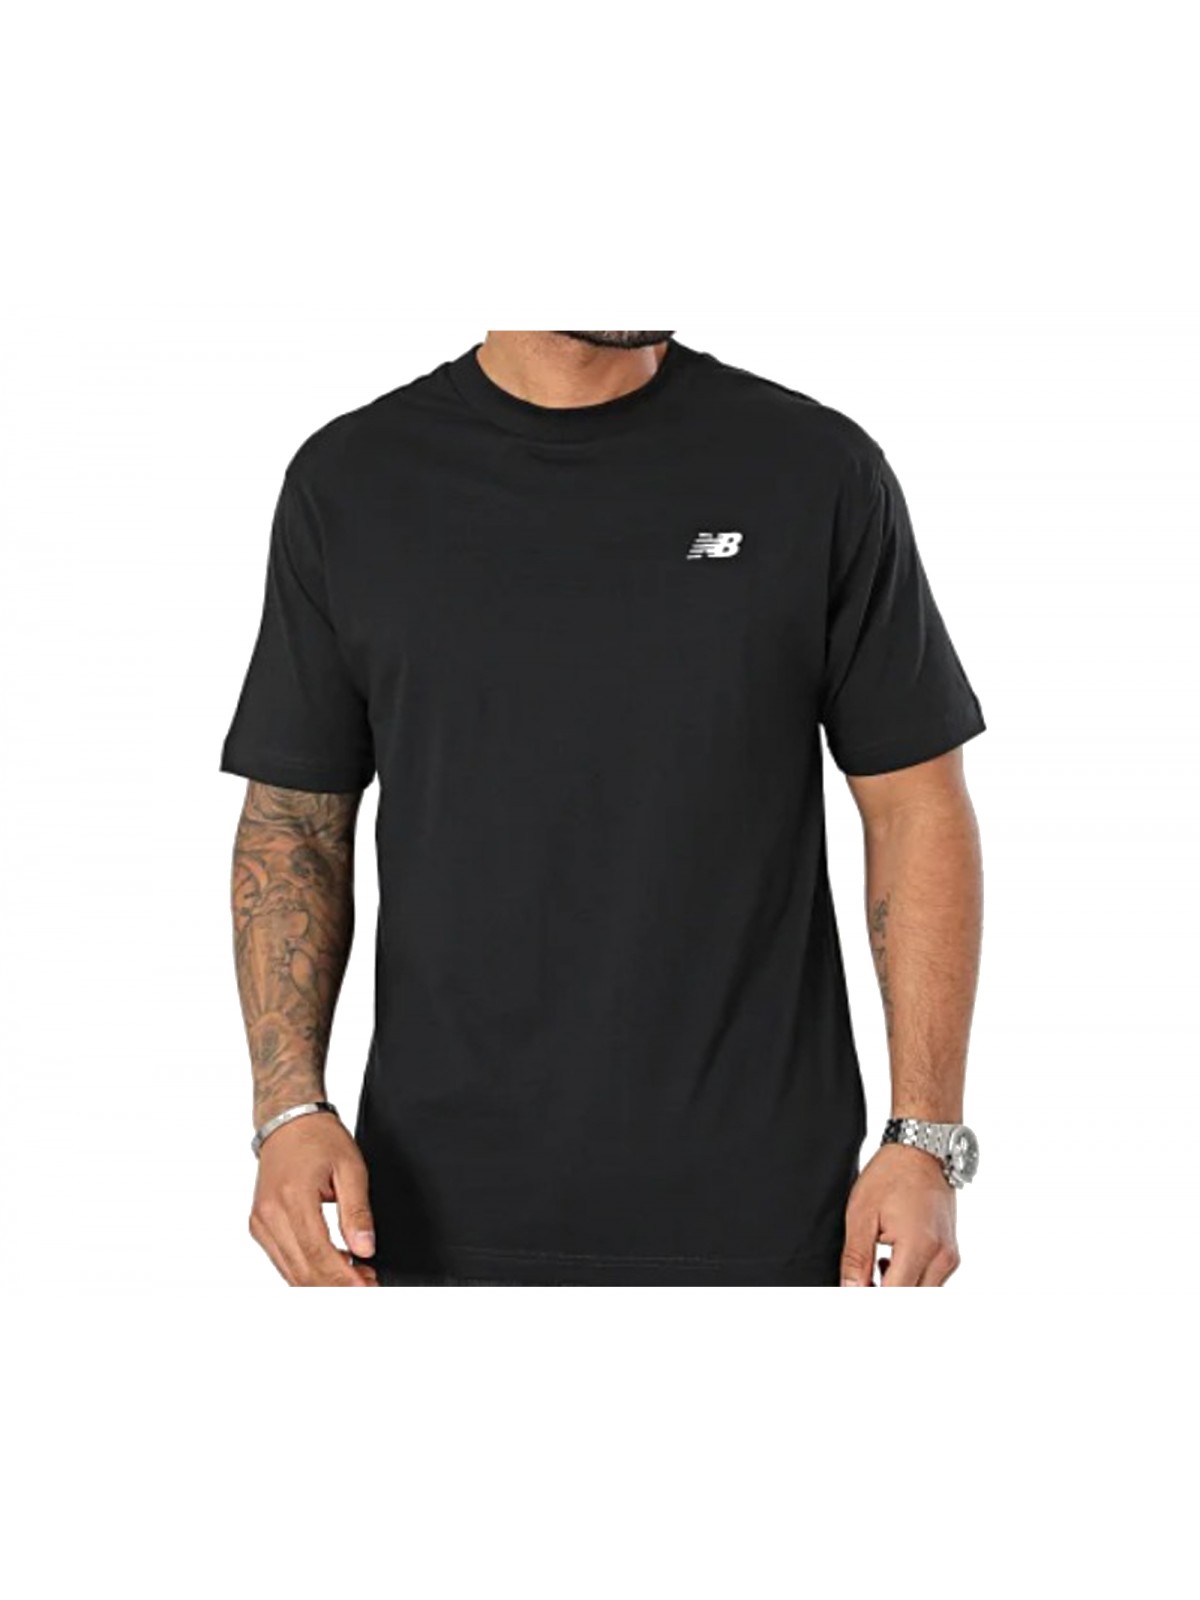 New Balance MT41509 Tee shirt noir